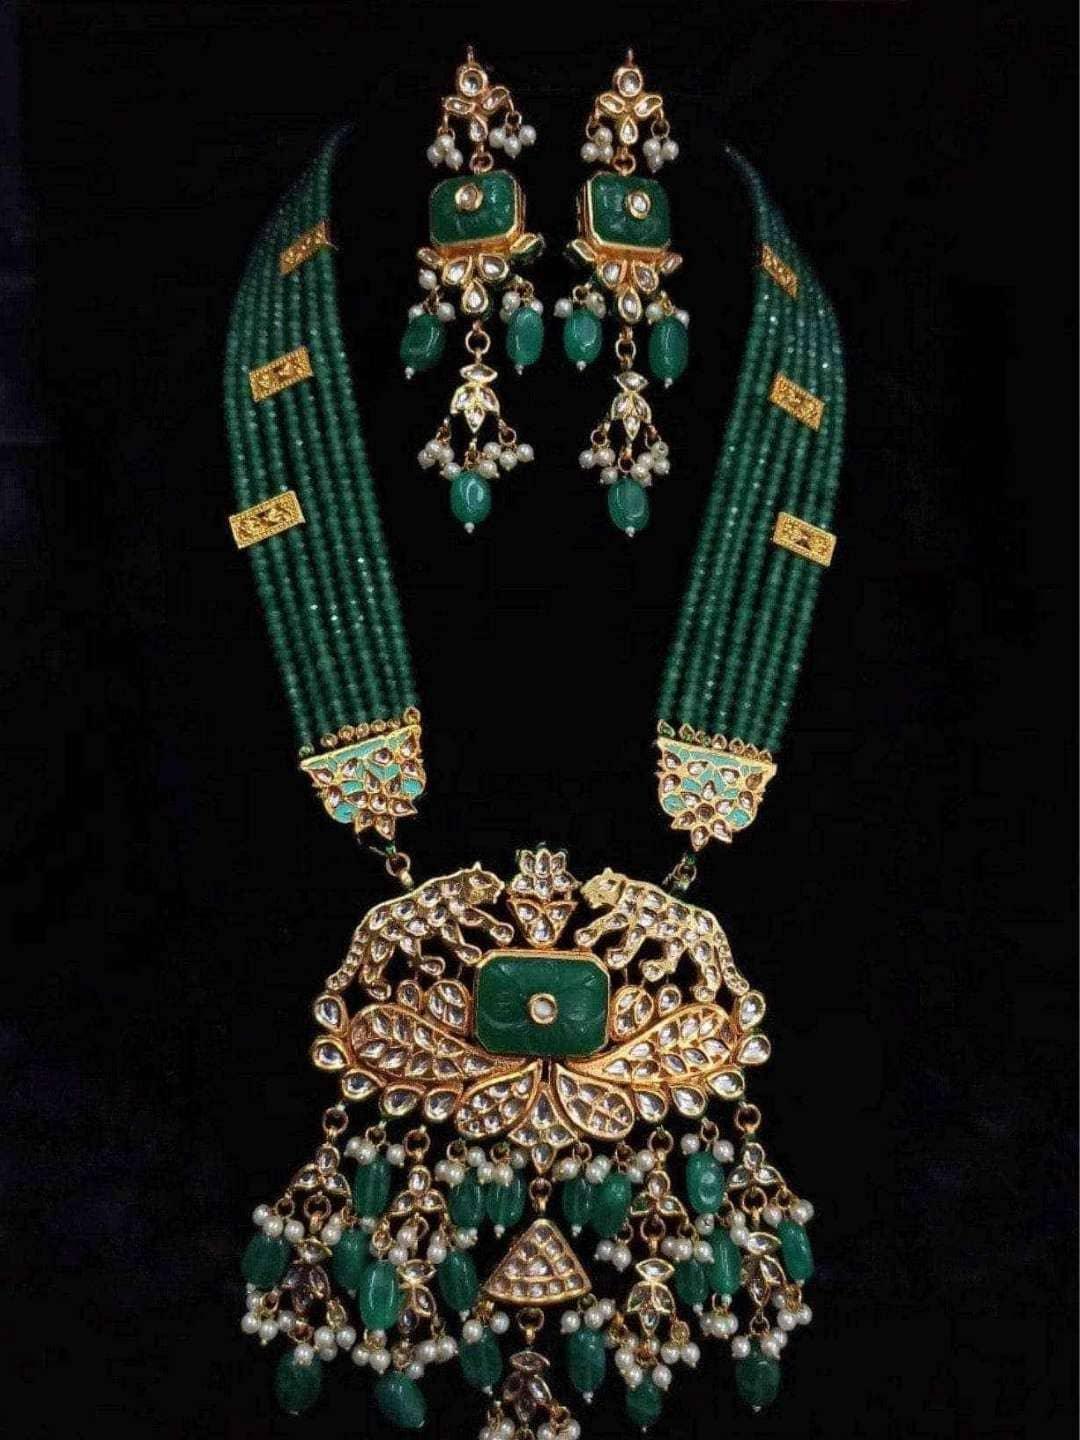 Ishhaara Tiger Motif Pendant Necklace